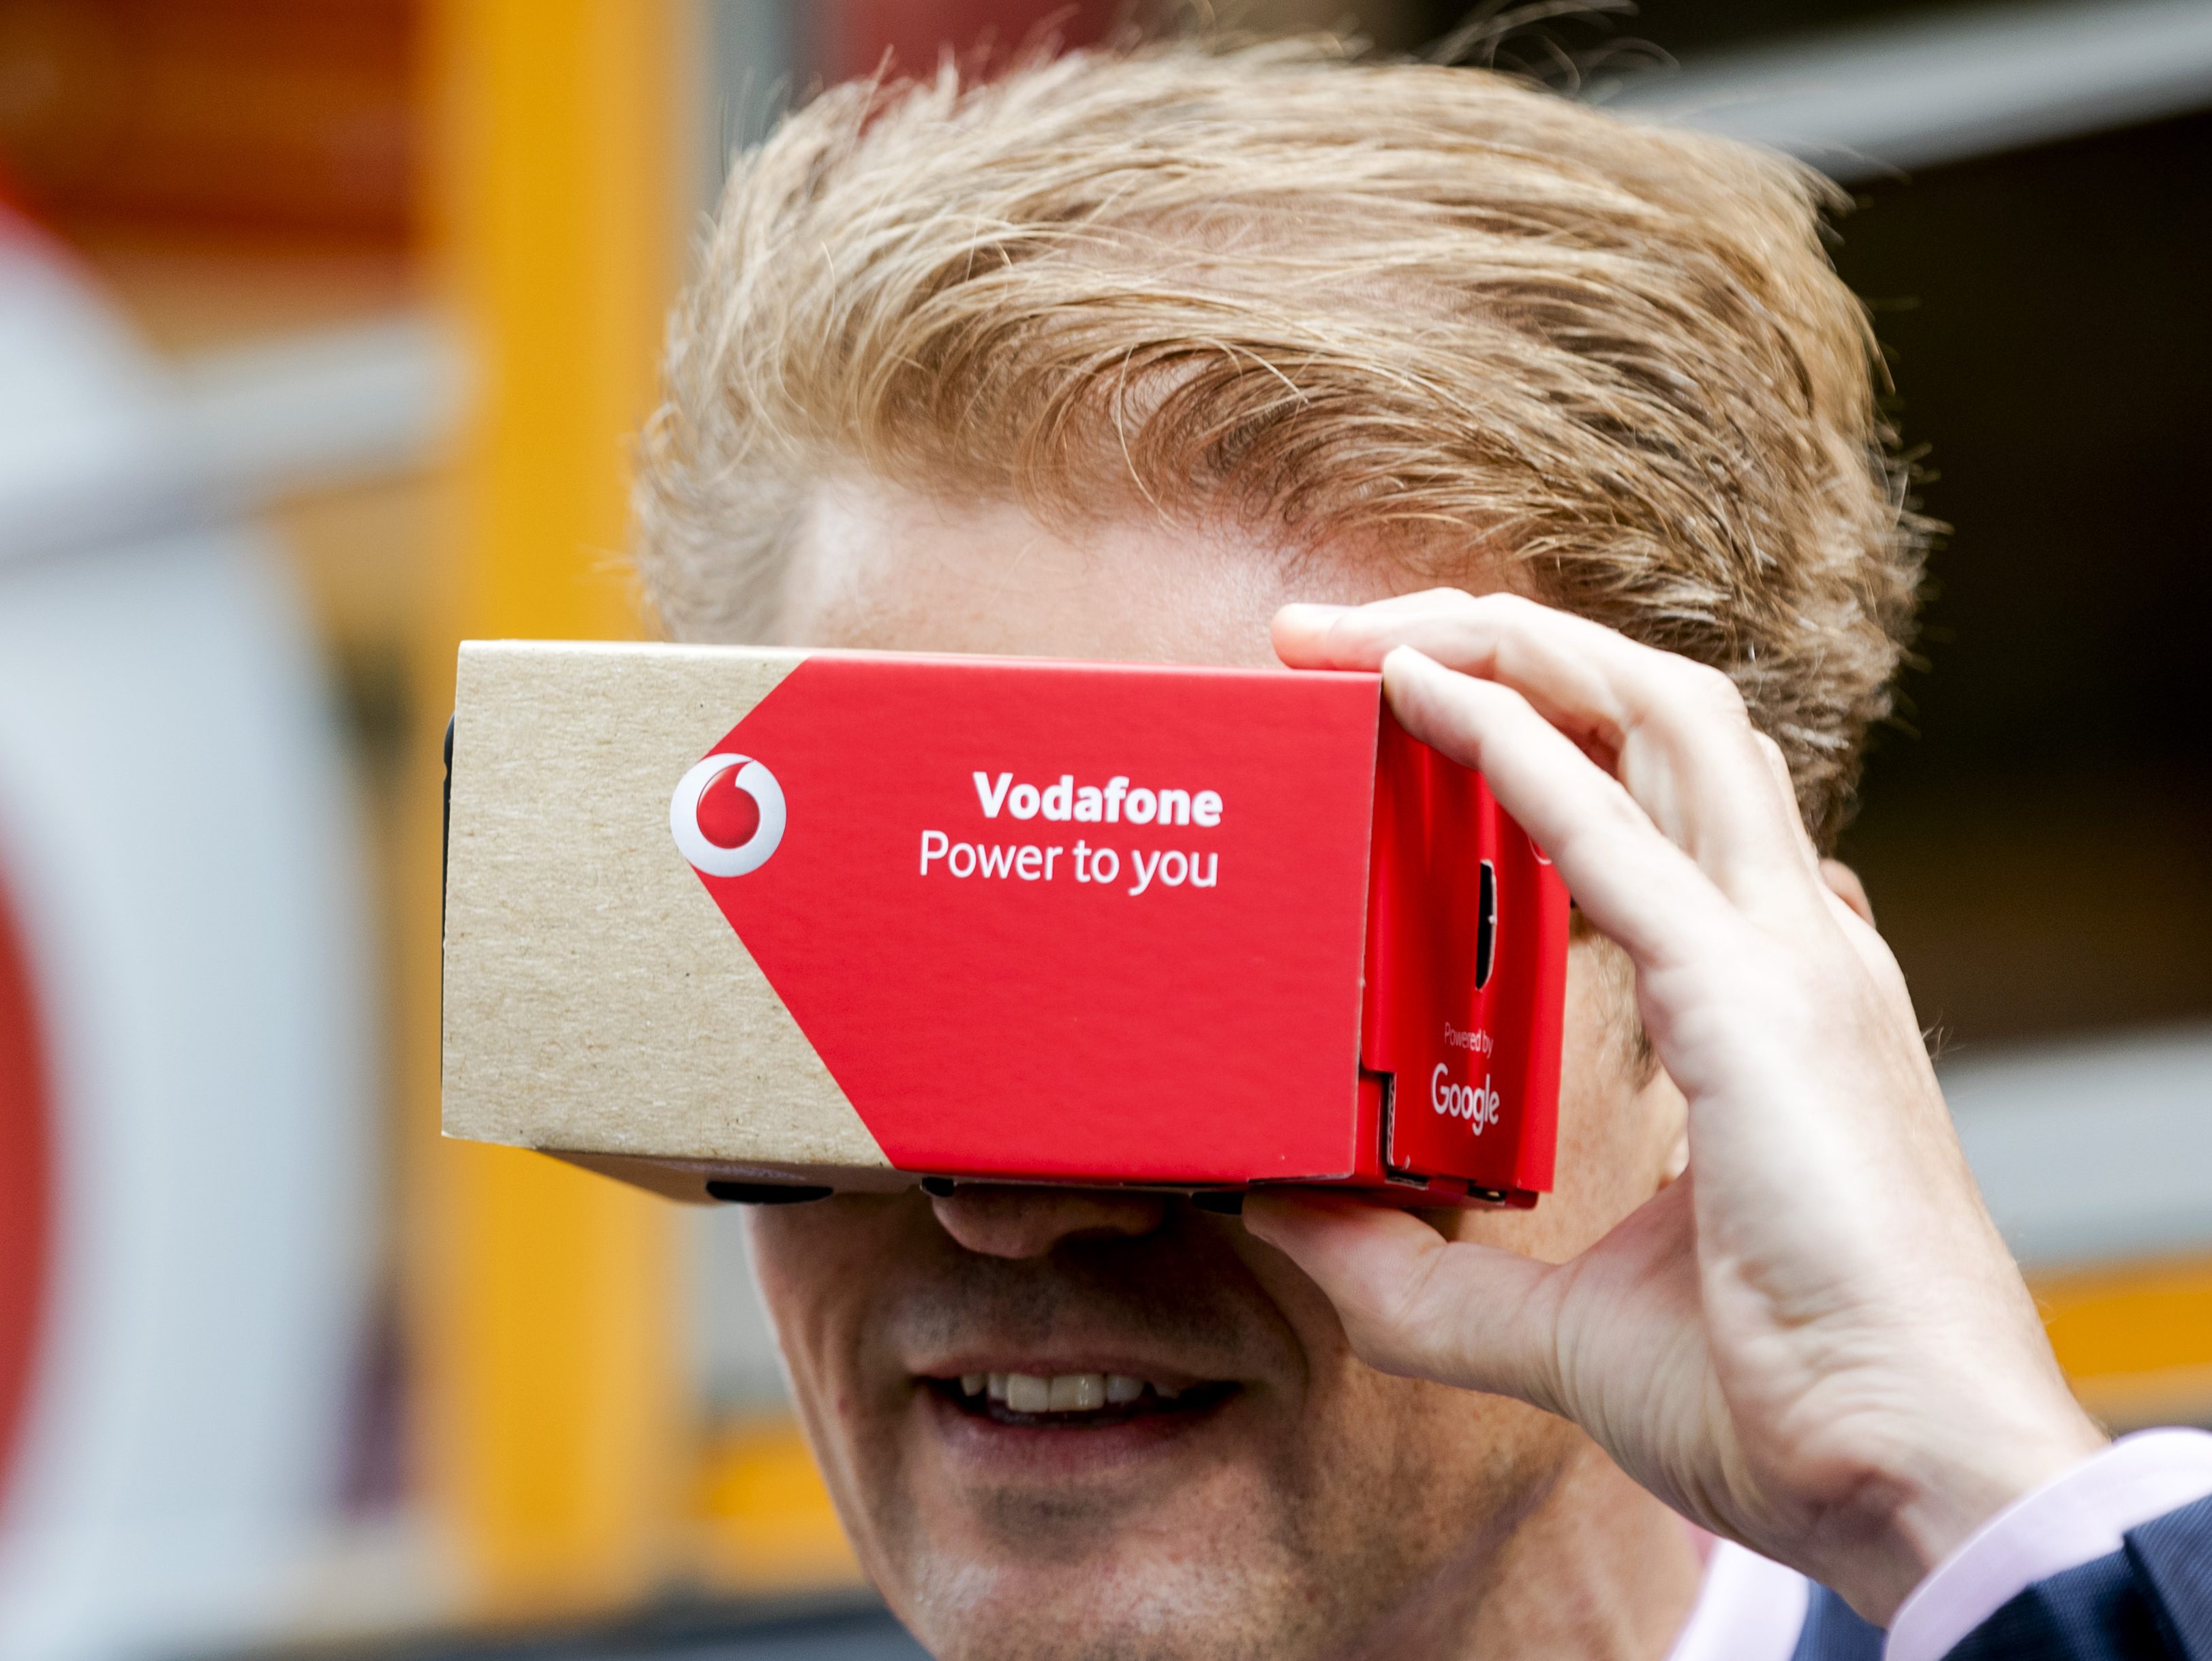 Vodafone Nederland verkoopt zijn afdeling voor vaste telefoonlijnen, internet en tv-diensten, ook bekend als Vodafone Thuis, aan T-Mobile Nederland. Financiële details werden niet verstrekt. De afsplitsing van Vodafone Thuis was een toezegging die Vodafone en het moederbedrijf van kabelaar Ziggo, Liberty Global, aanboden aan de Europese Commissie, als voorwaarde voor het samengaan van Vodafone Nederland en Ziggo in Nederland. Verschillende toezichthouders moeten de verkoop van de tak nog beoordelen, maar afronding van de transactie wordt voorzien in december.